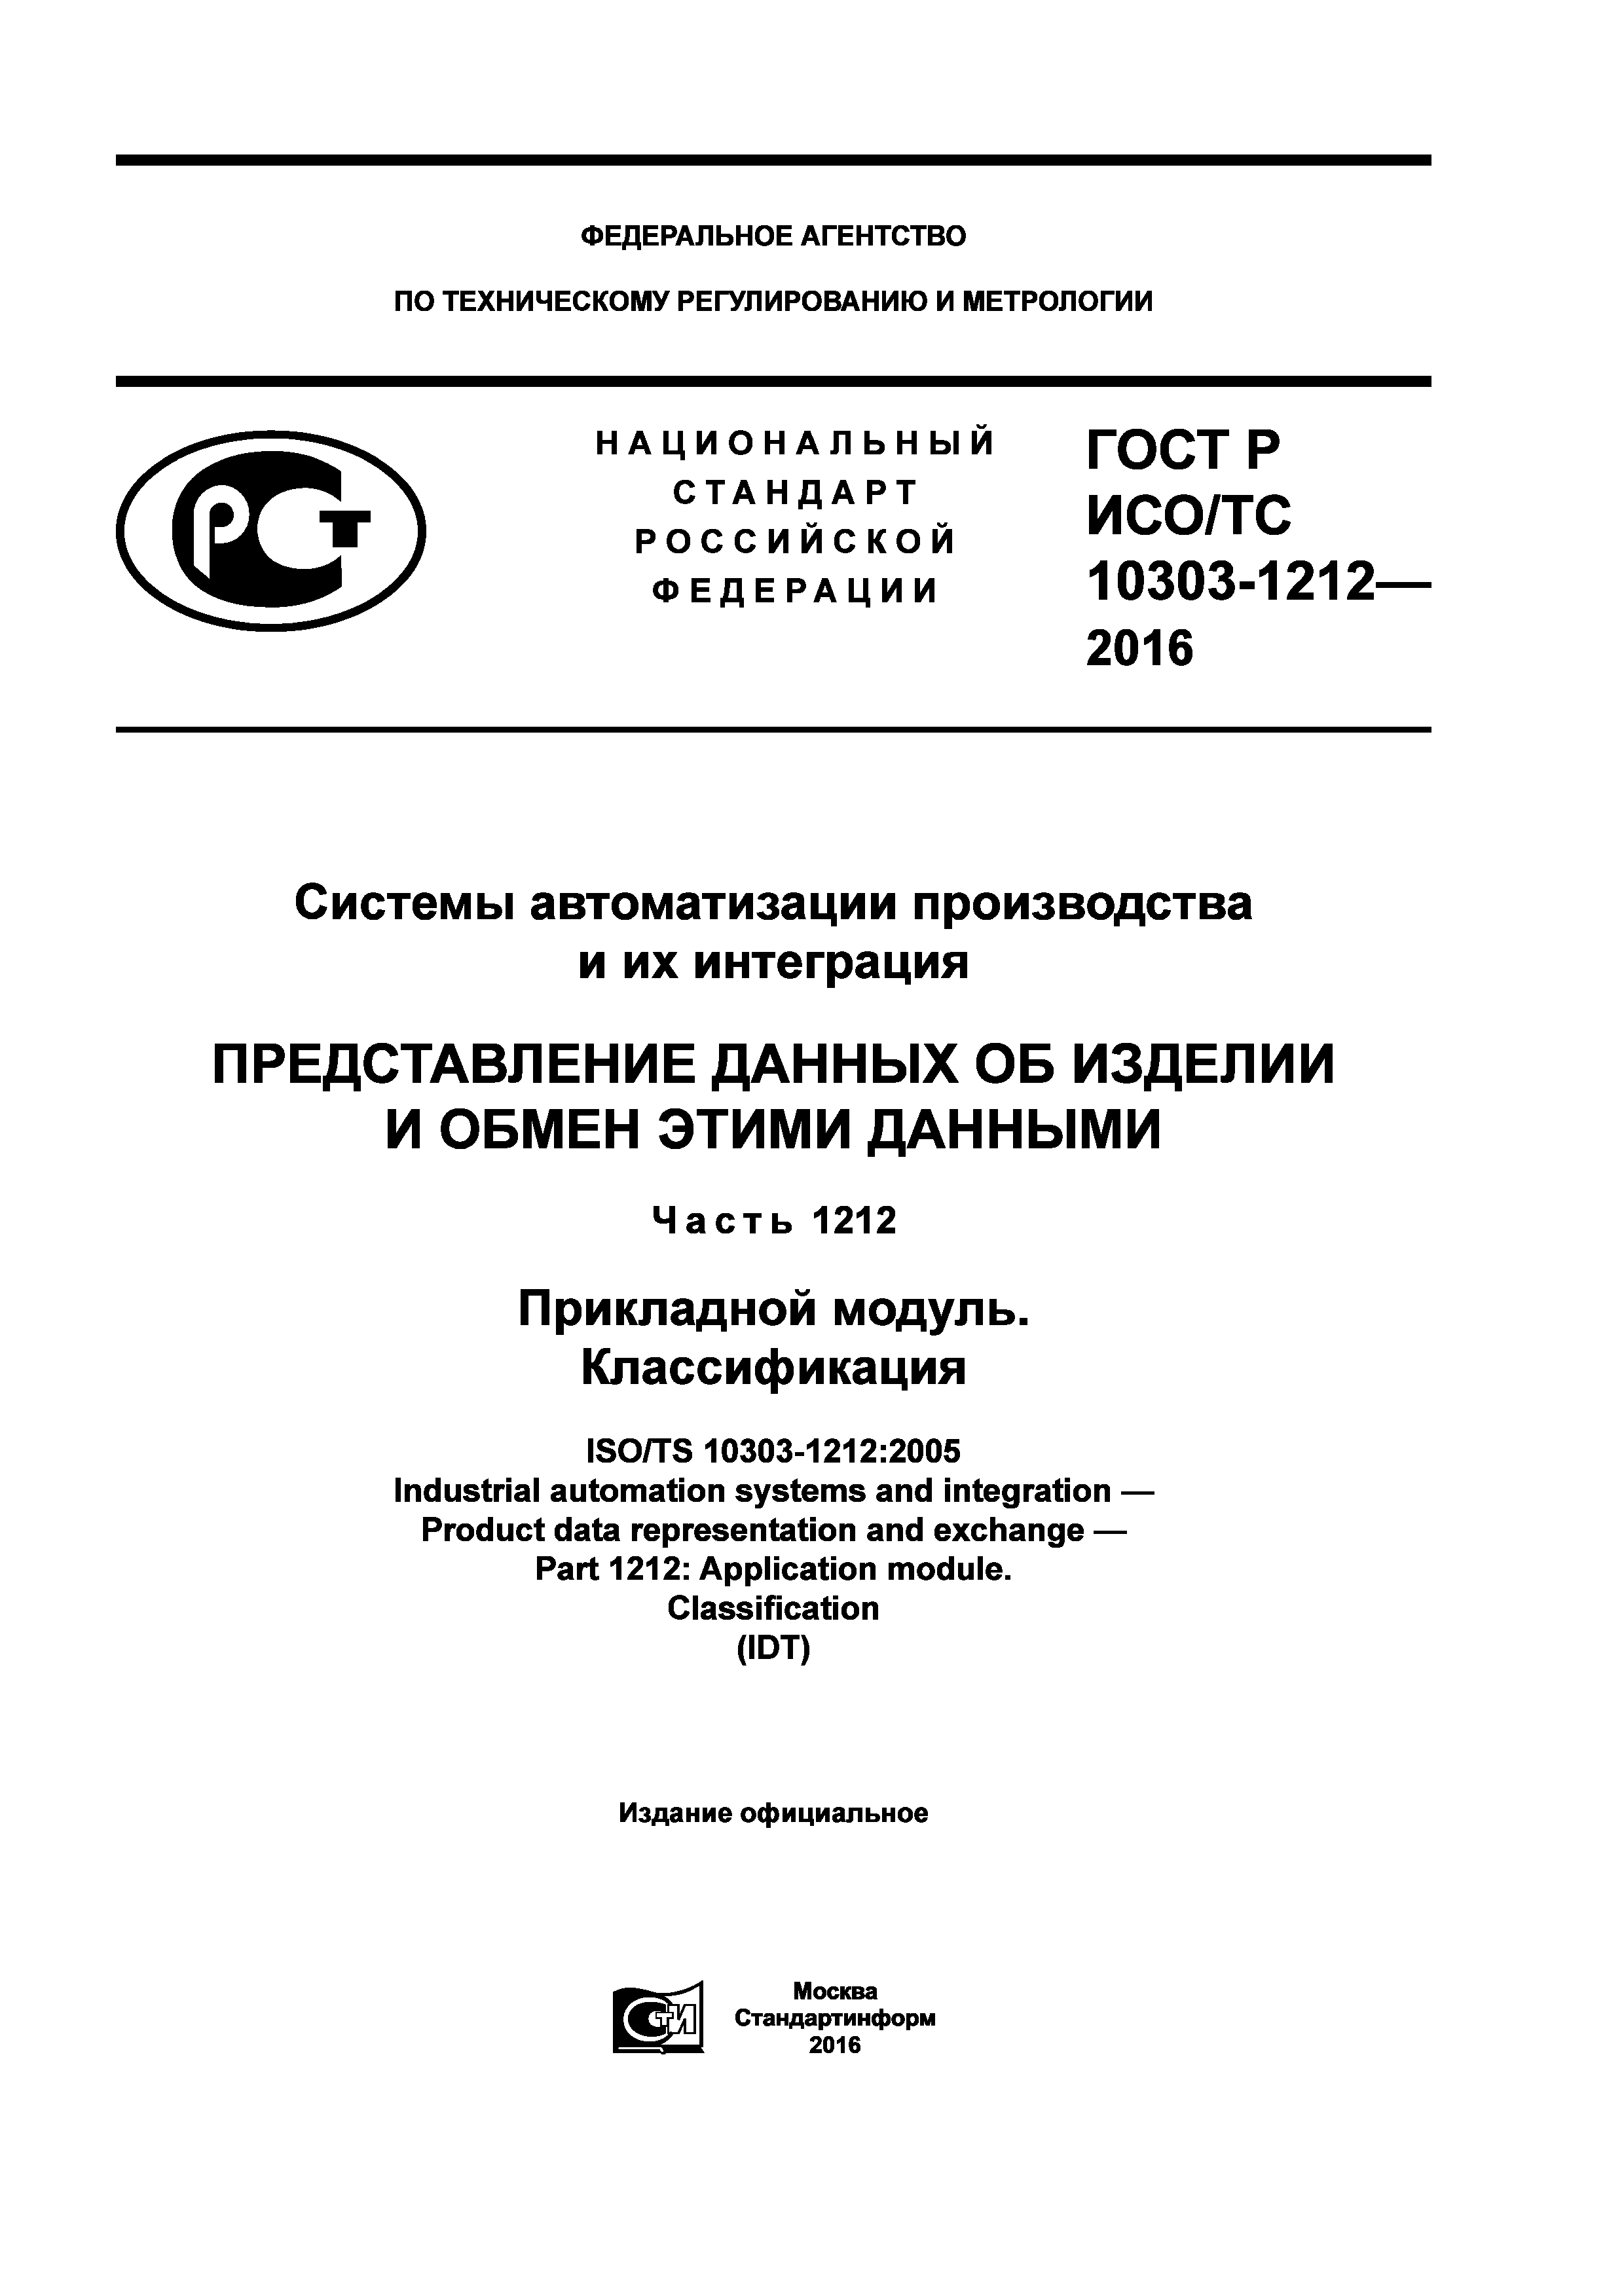 ГОСТ Р ИСО/ТС 10303-1212-2016